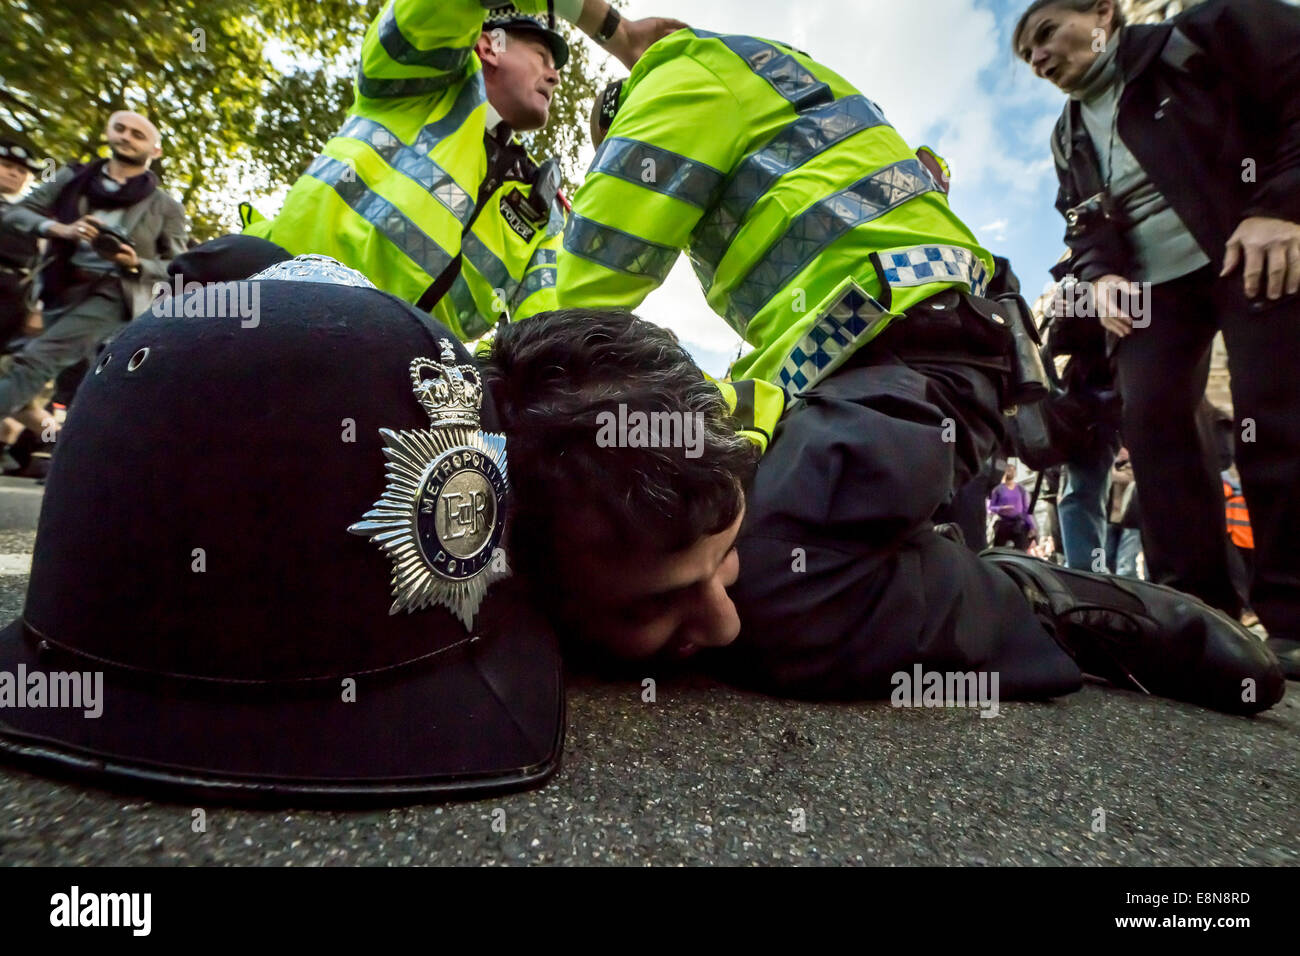 Londres, Royaume-Uni. Oct 11, 2014. Les manifestants kurdes en conflit avec la police a rencontré 2014 Crédit : Guy Josse/Alamy Live News Banque D'Images